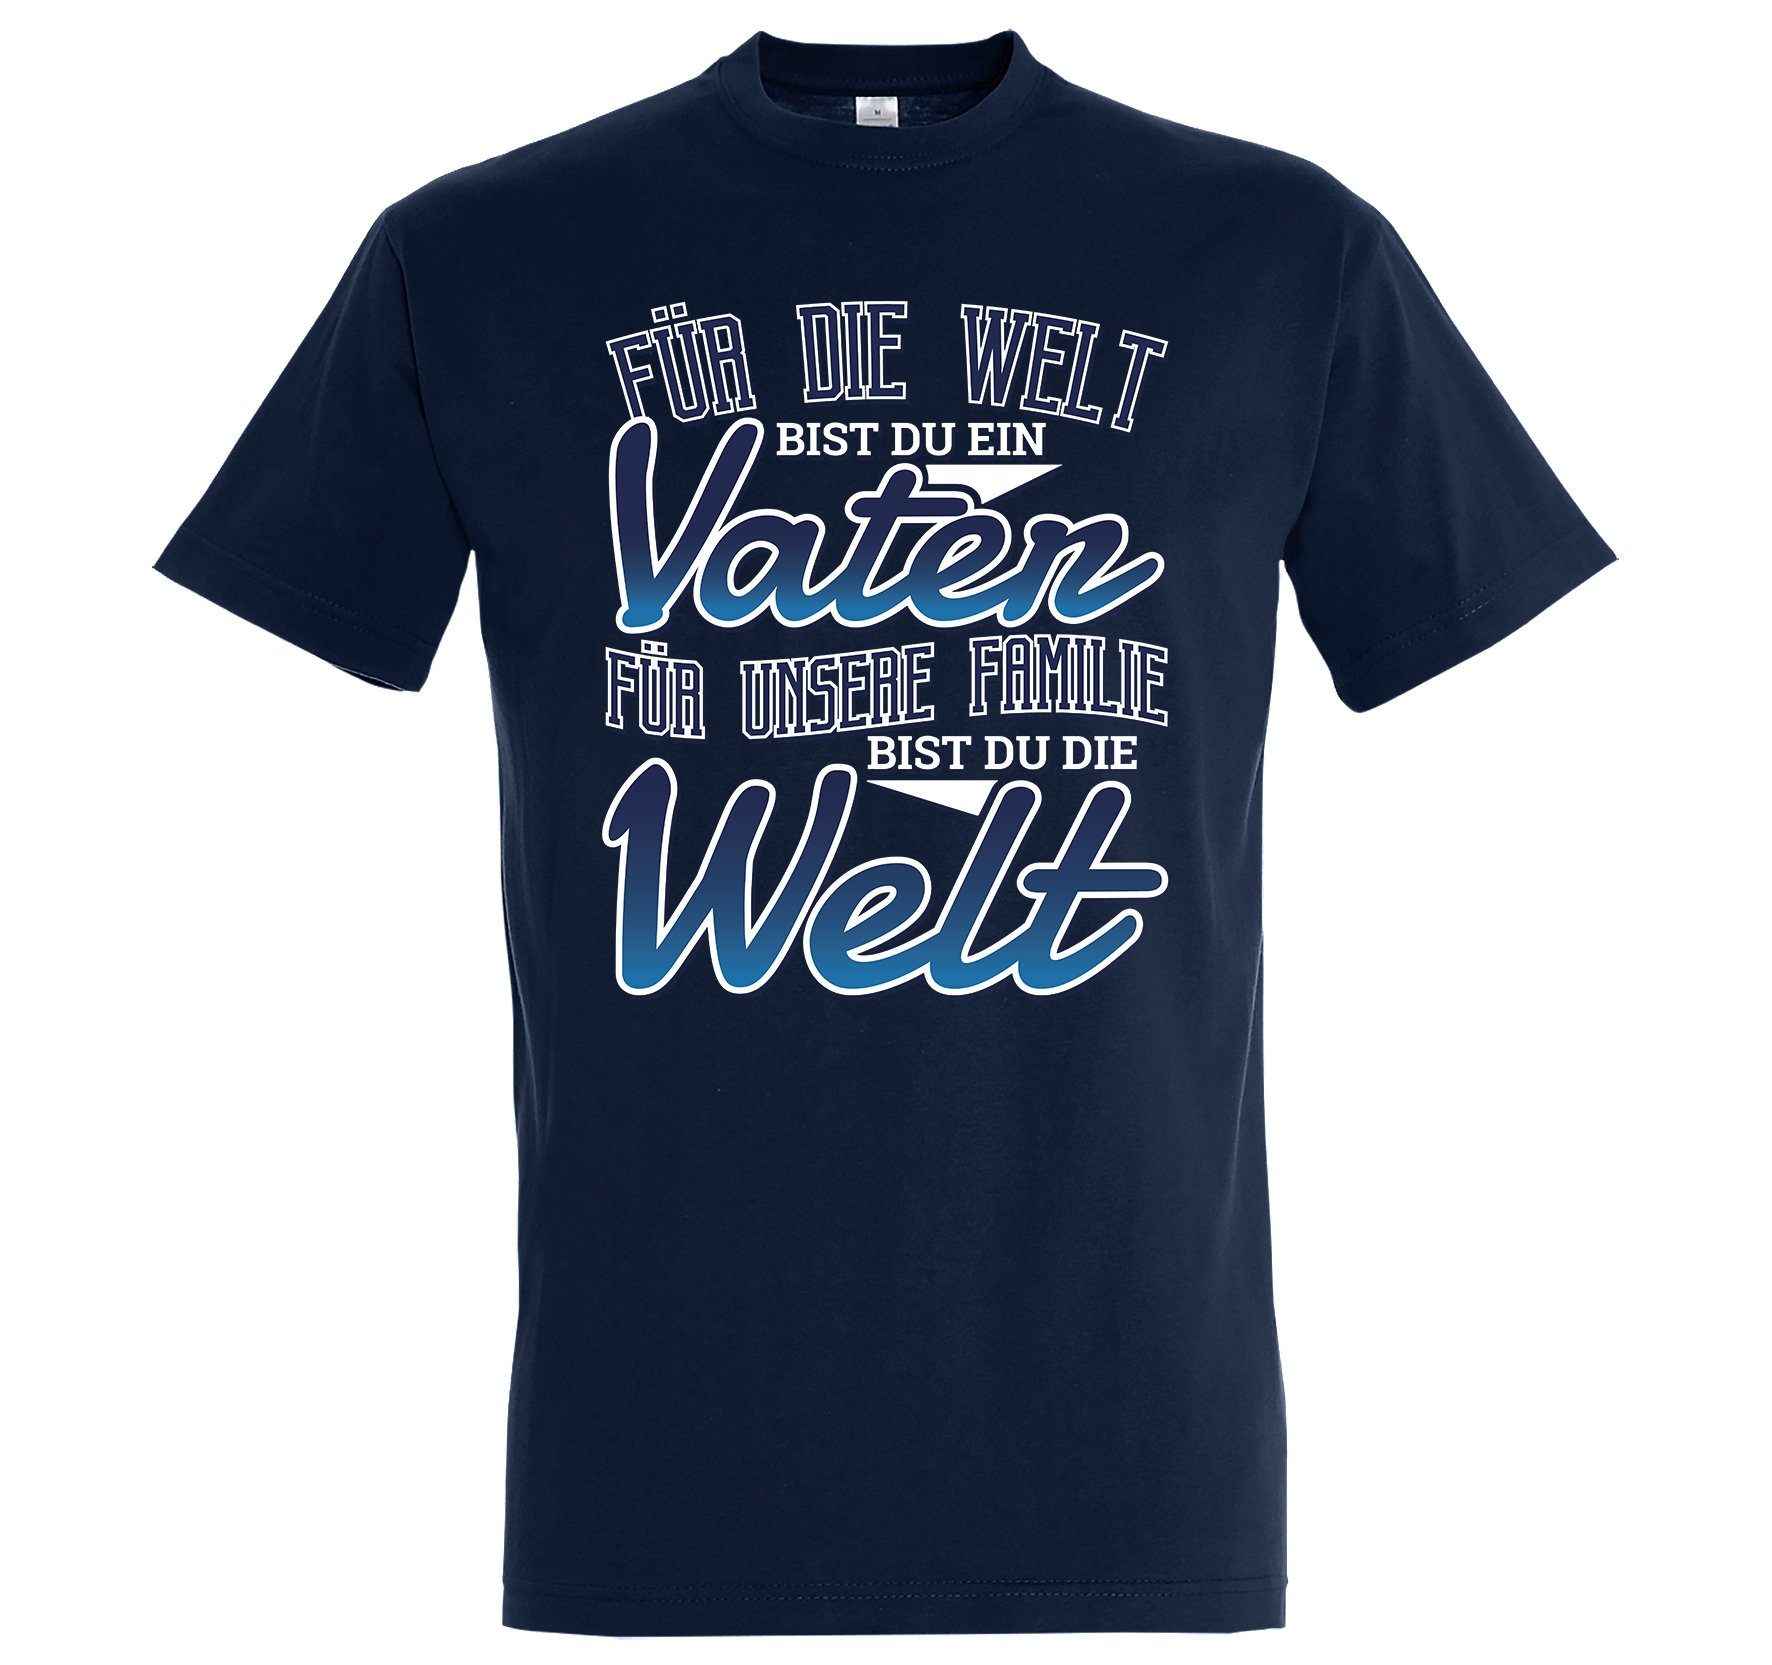 Youth Designz Print-Shirt "Für Unsere Familie Bist Du Die Welt" Herren T-Shirt mit lustigem Spruch Navy Blau